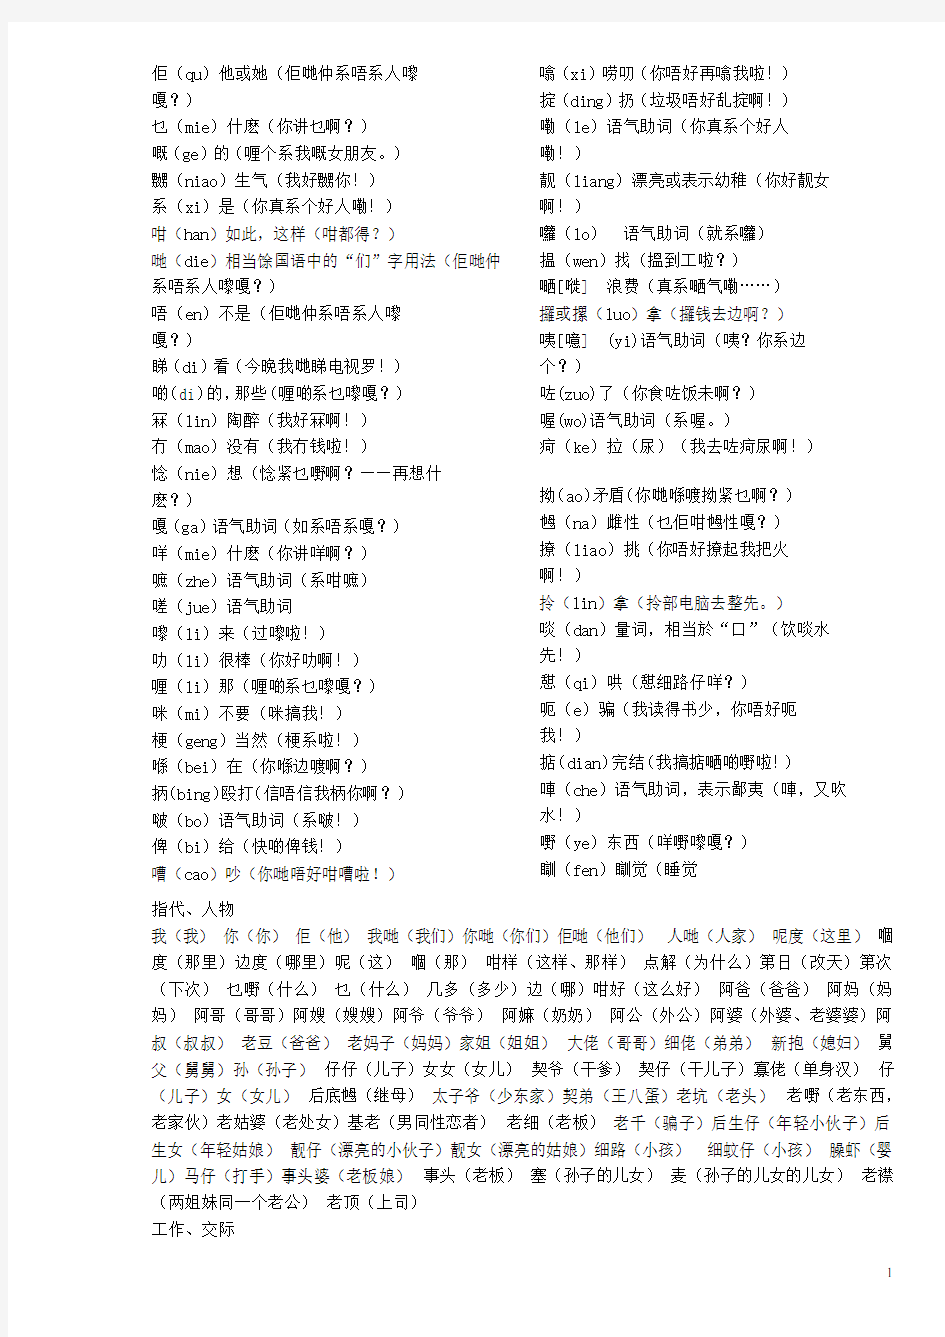 汉语粤语对照表